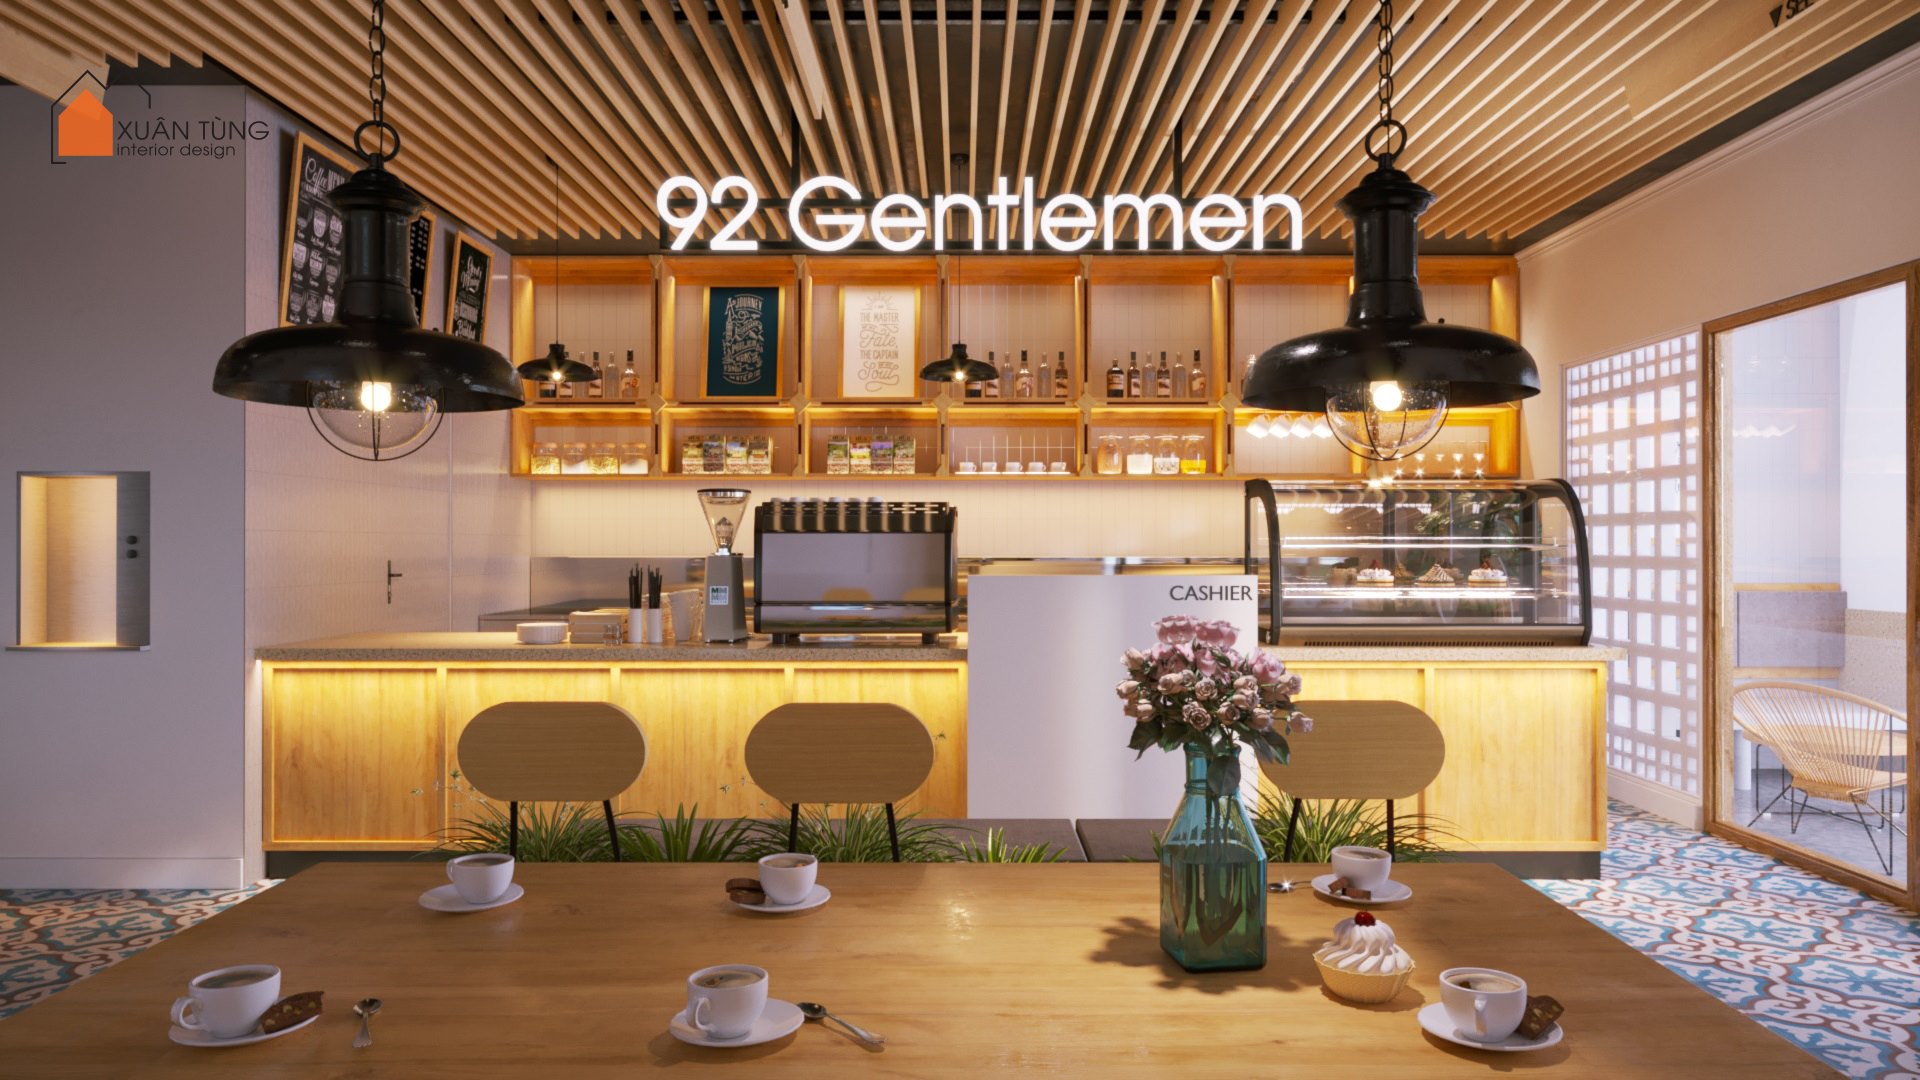 Gelement Cafe